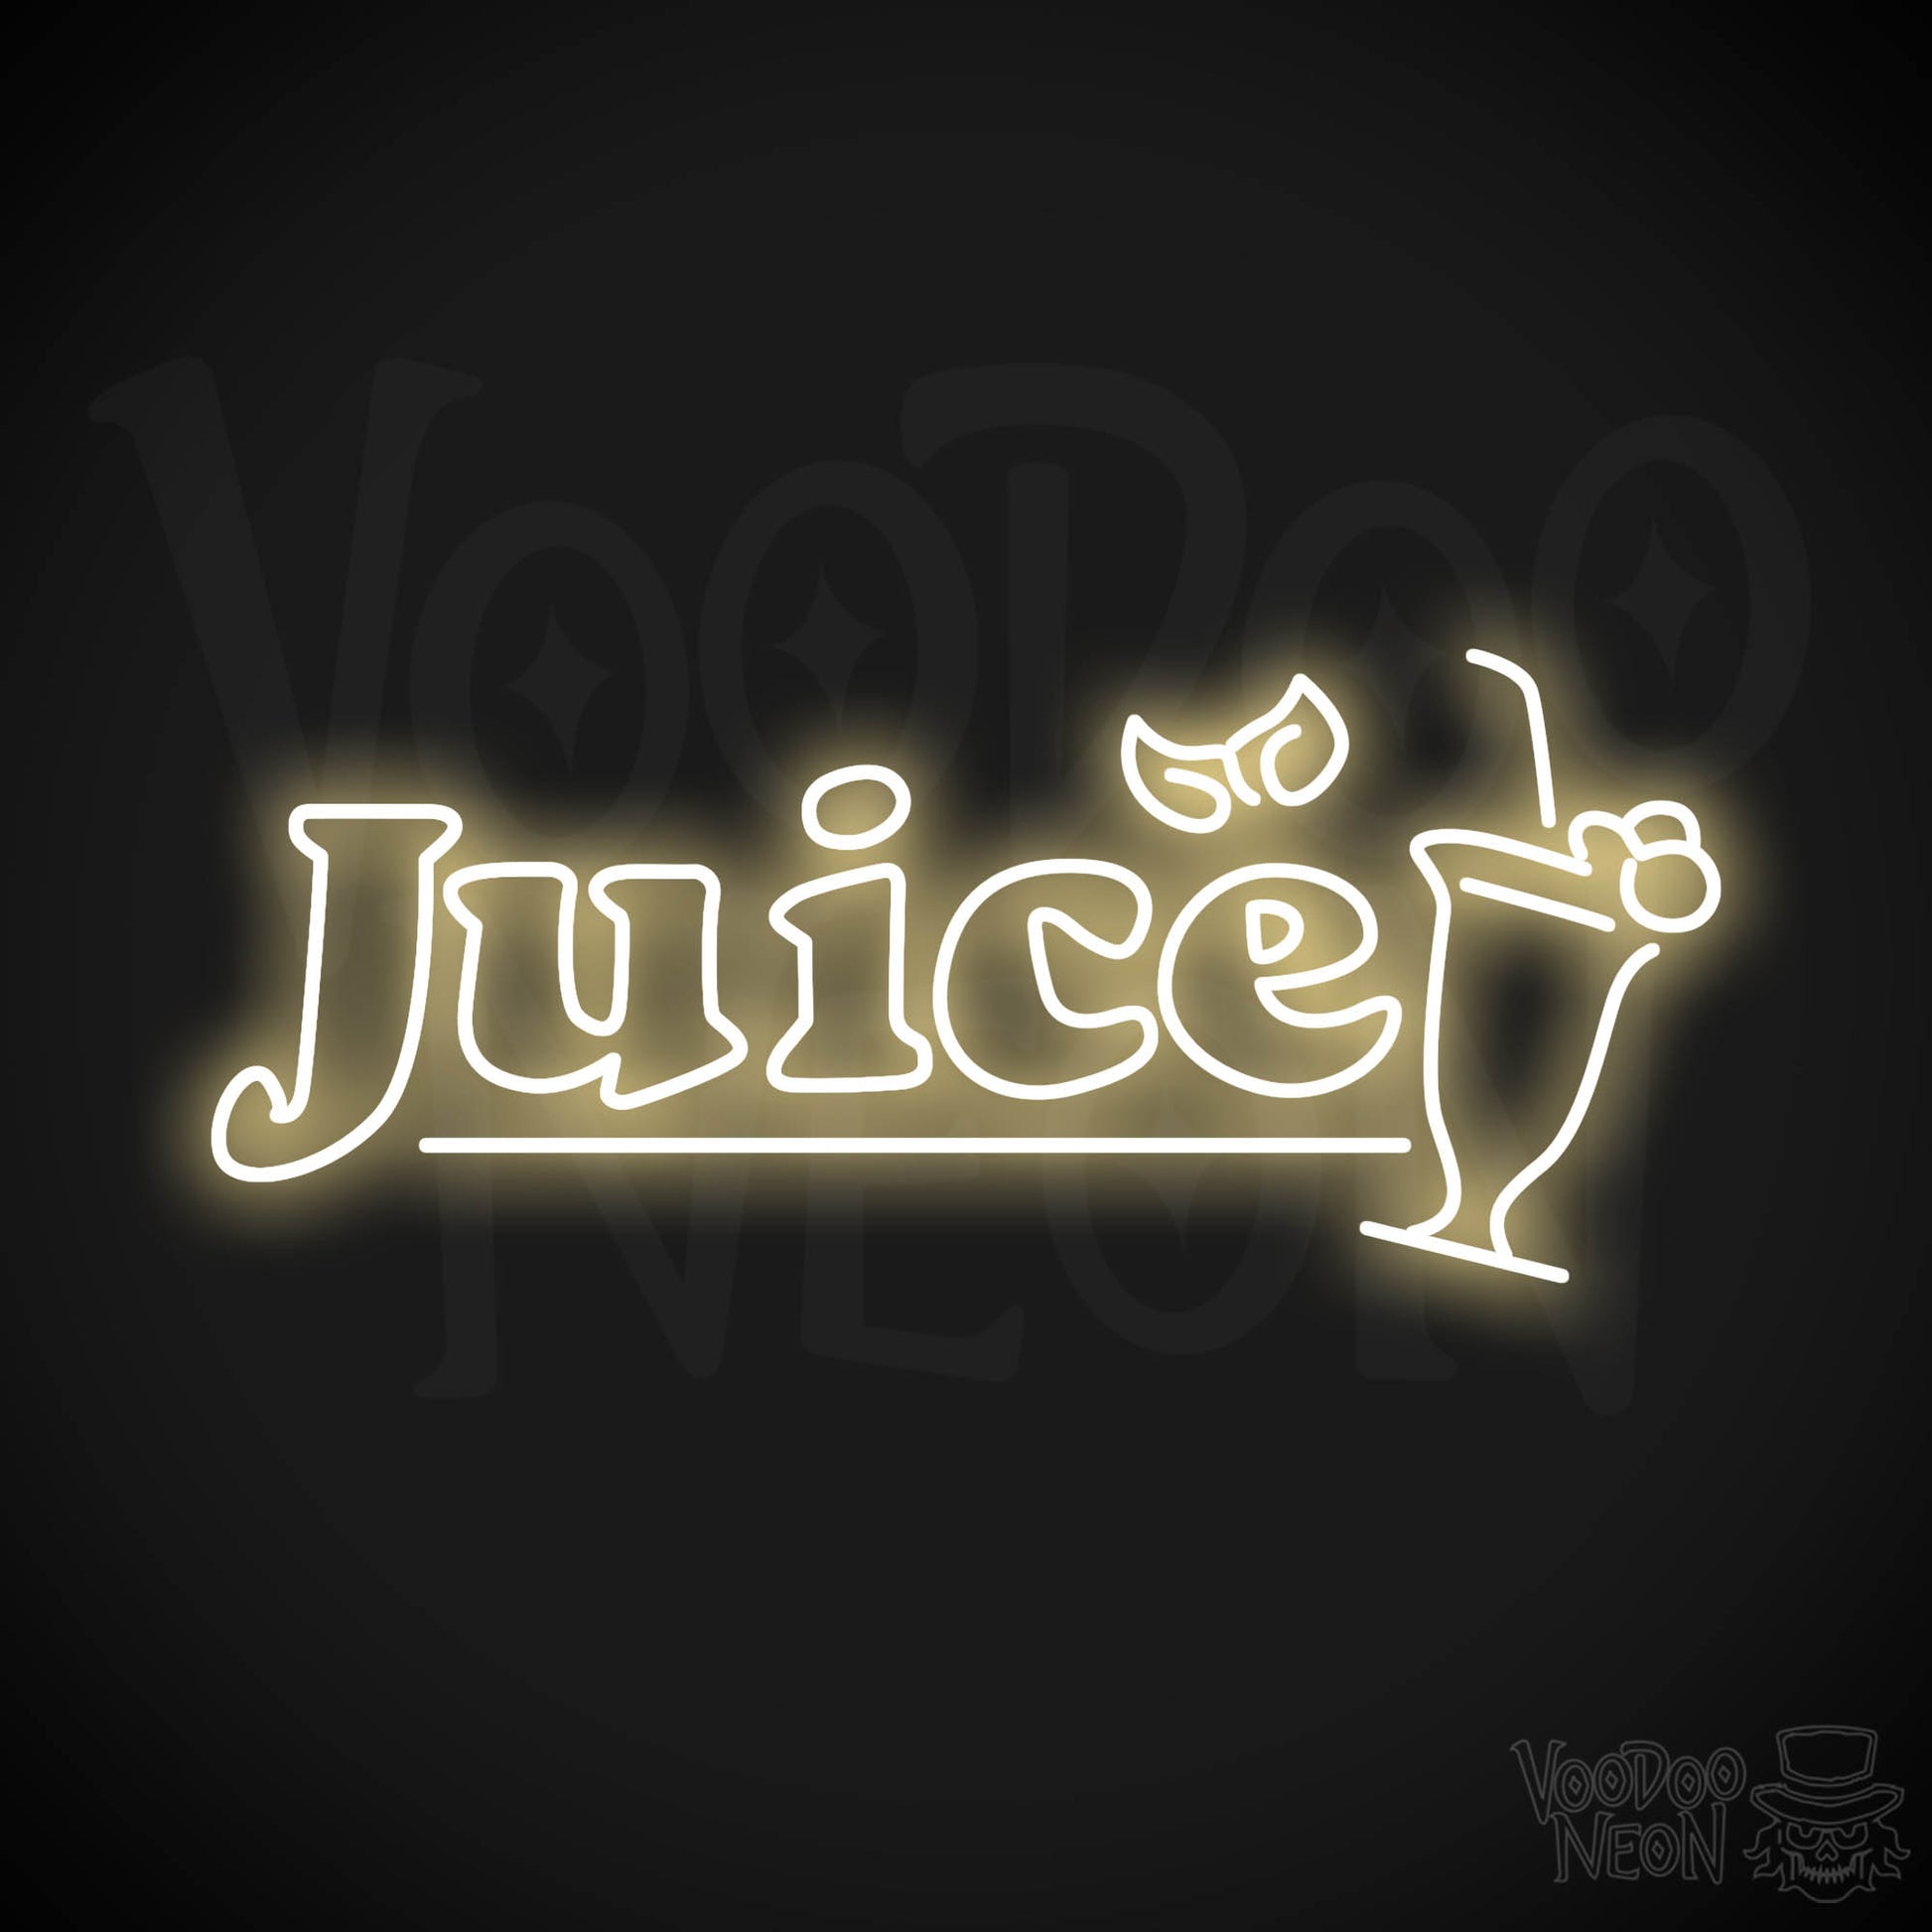 Juice LED Neon - Warm White